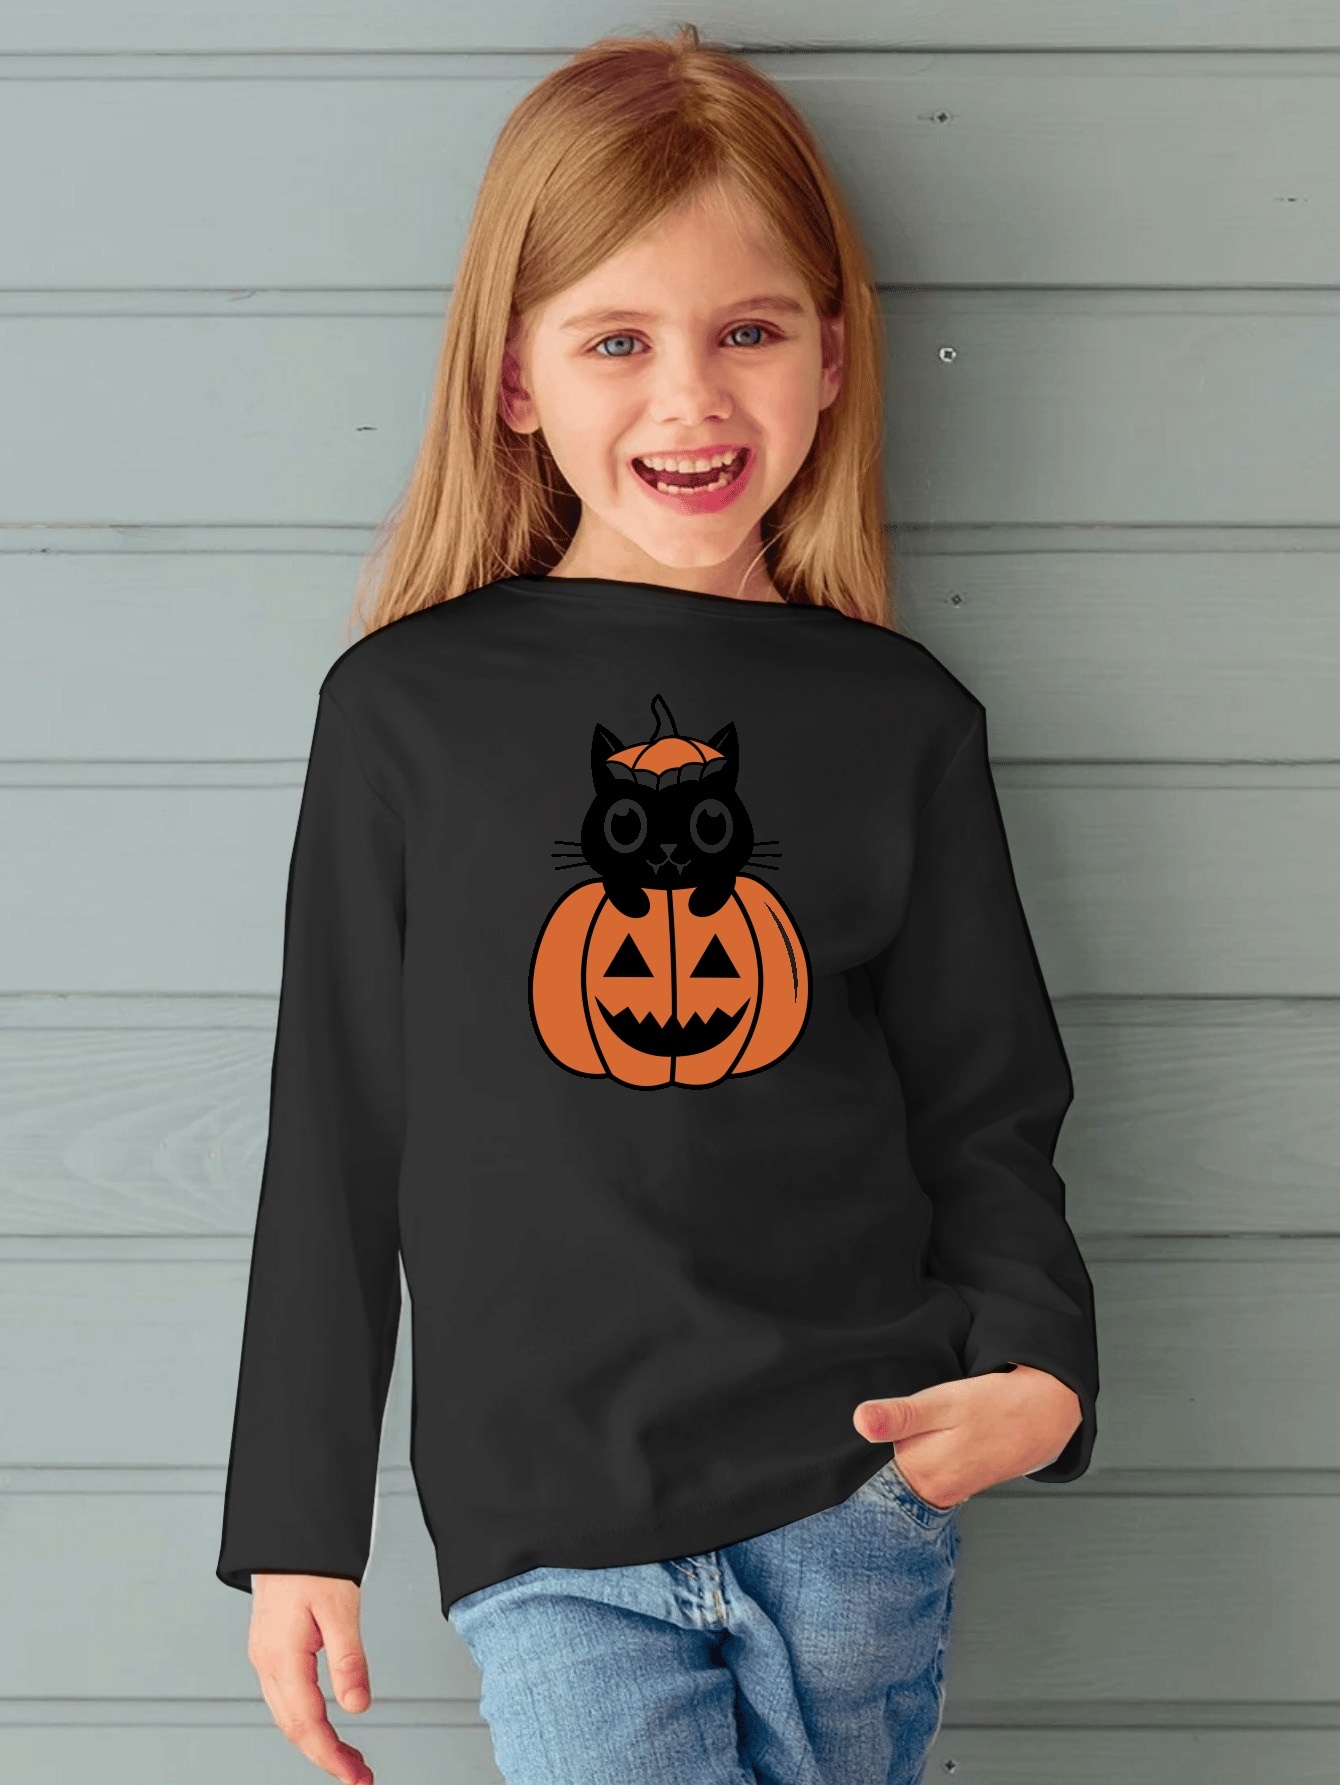 Boys Halloween Long Sleeve Pumpkin Graphic Tee